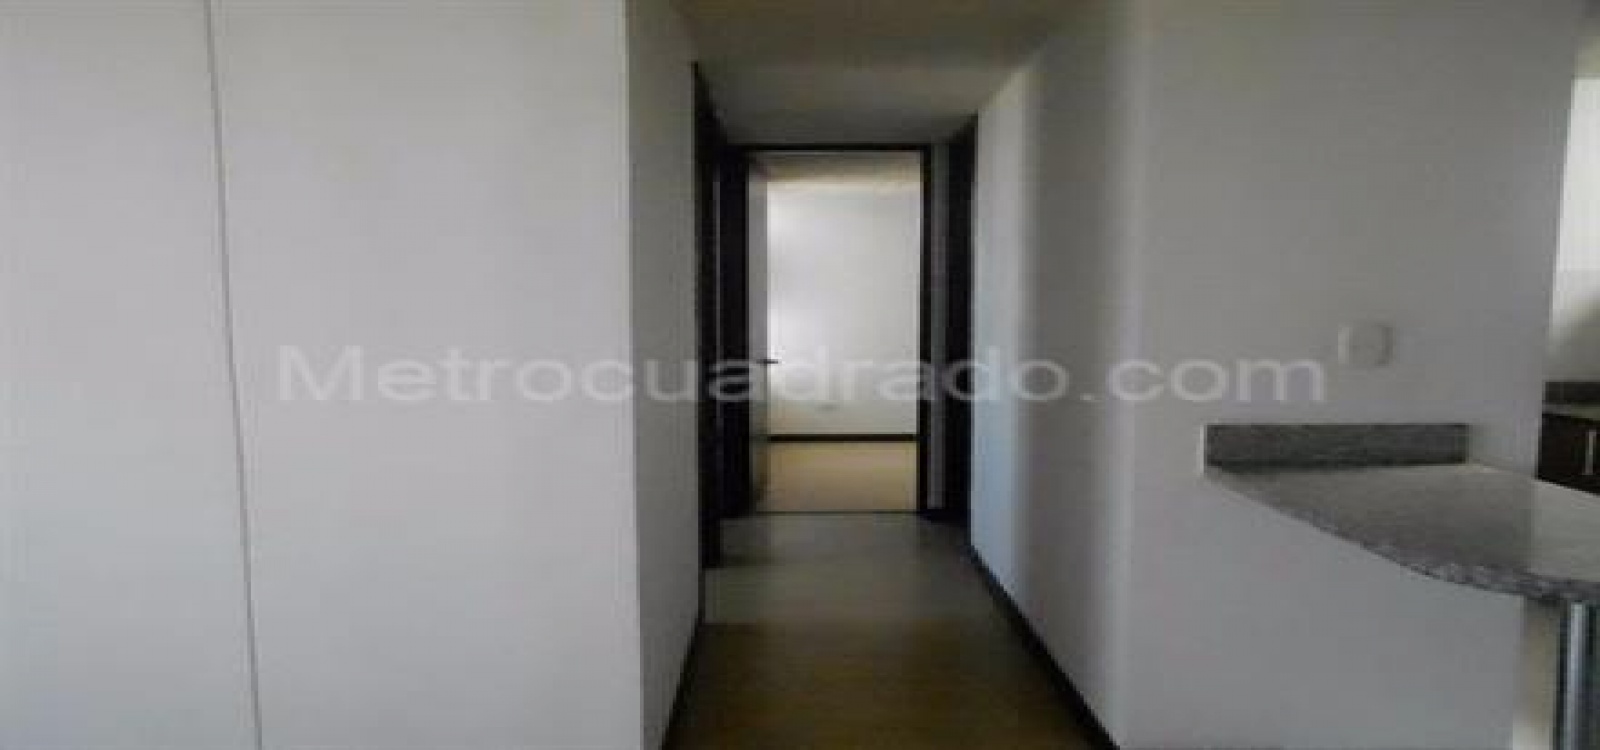 16 28 CARRERA 104, Bogotá, Occidente, Fontibon, 3 Habitaciones Habitaciones,2 BathroomsBathrooms,Apartamentos,Venta,CARRERA 104,1941